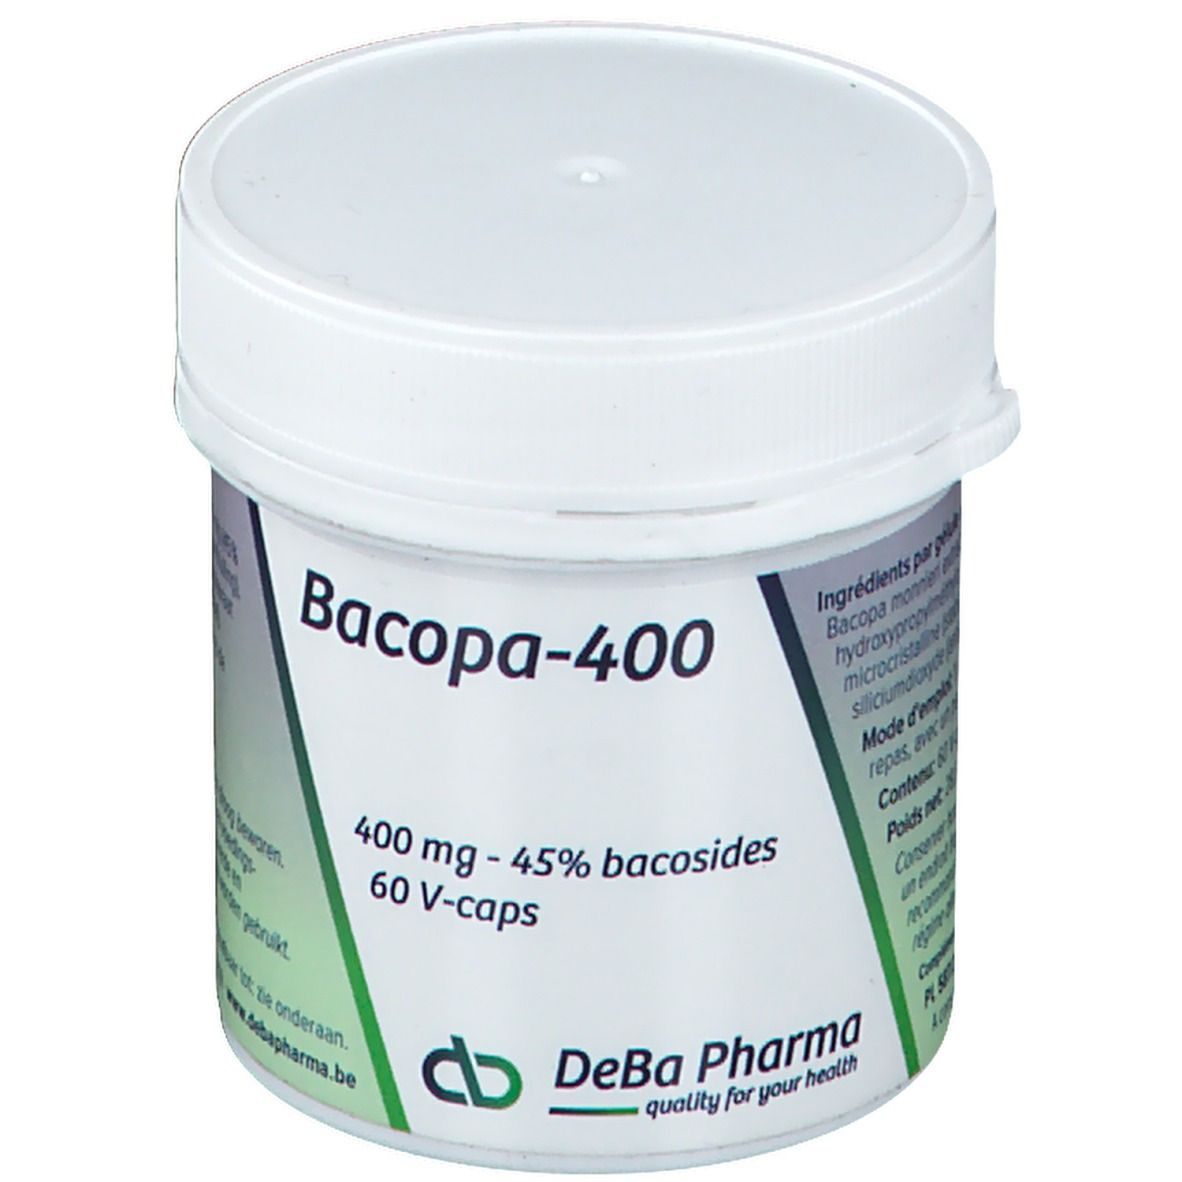 DeBa Pharma Bacopa-400